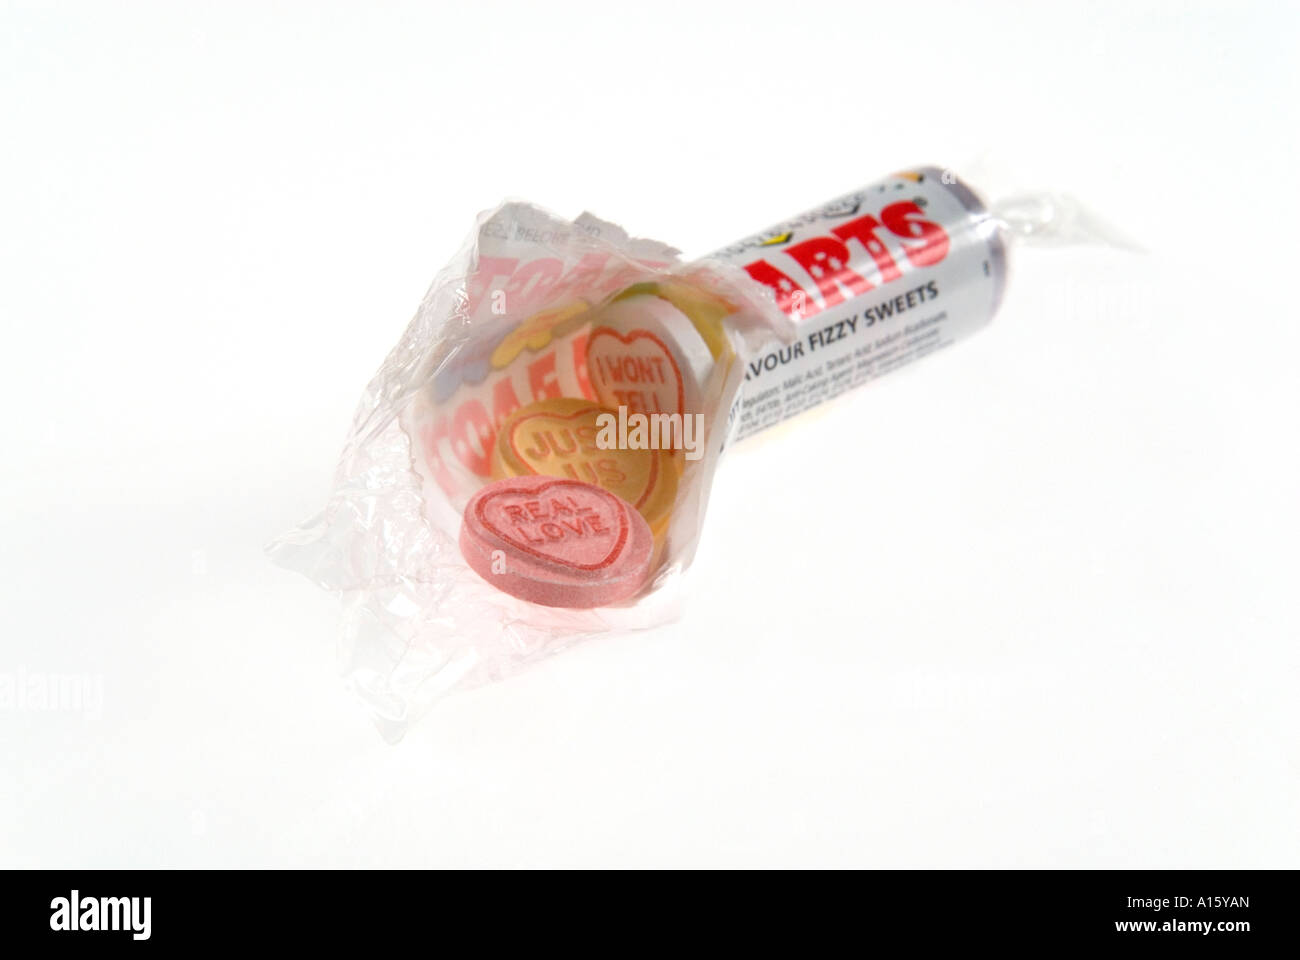 Packet candy Ausgeschnittene Stockfotos und -bilder - Seite 2 - Alamy